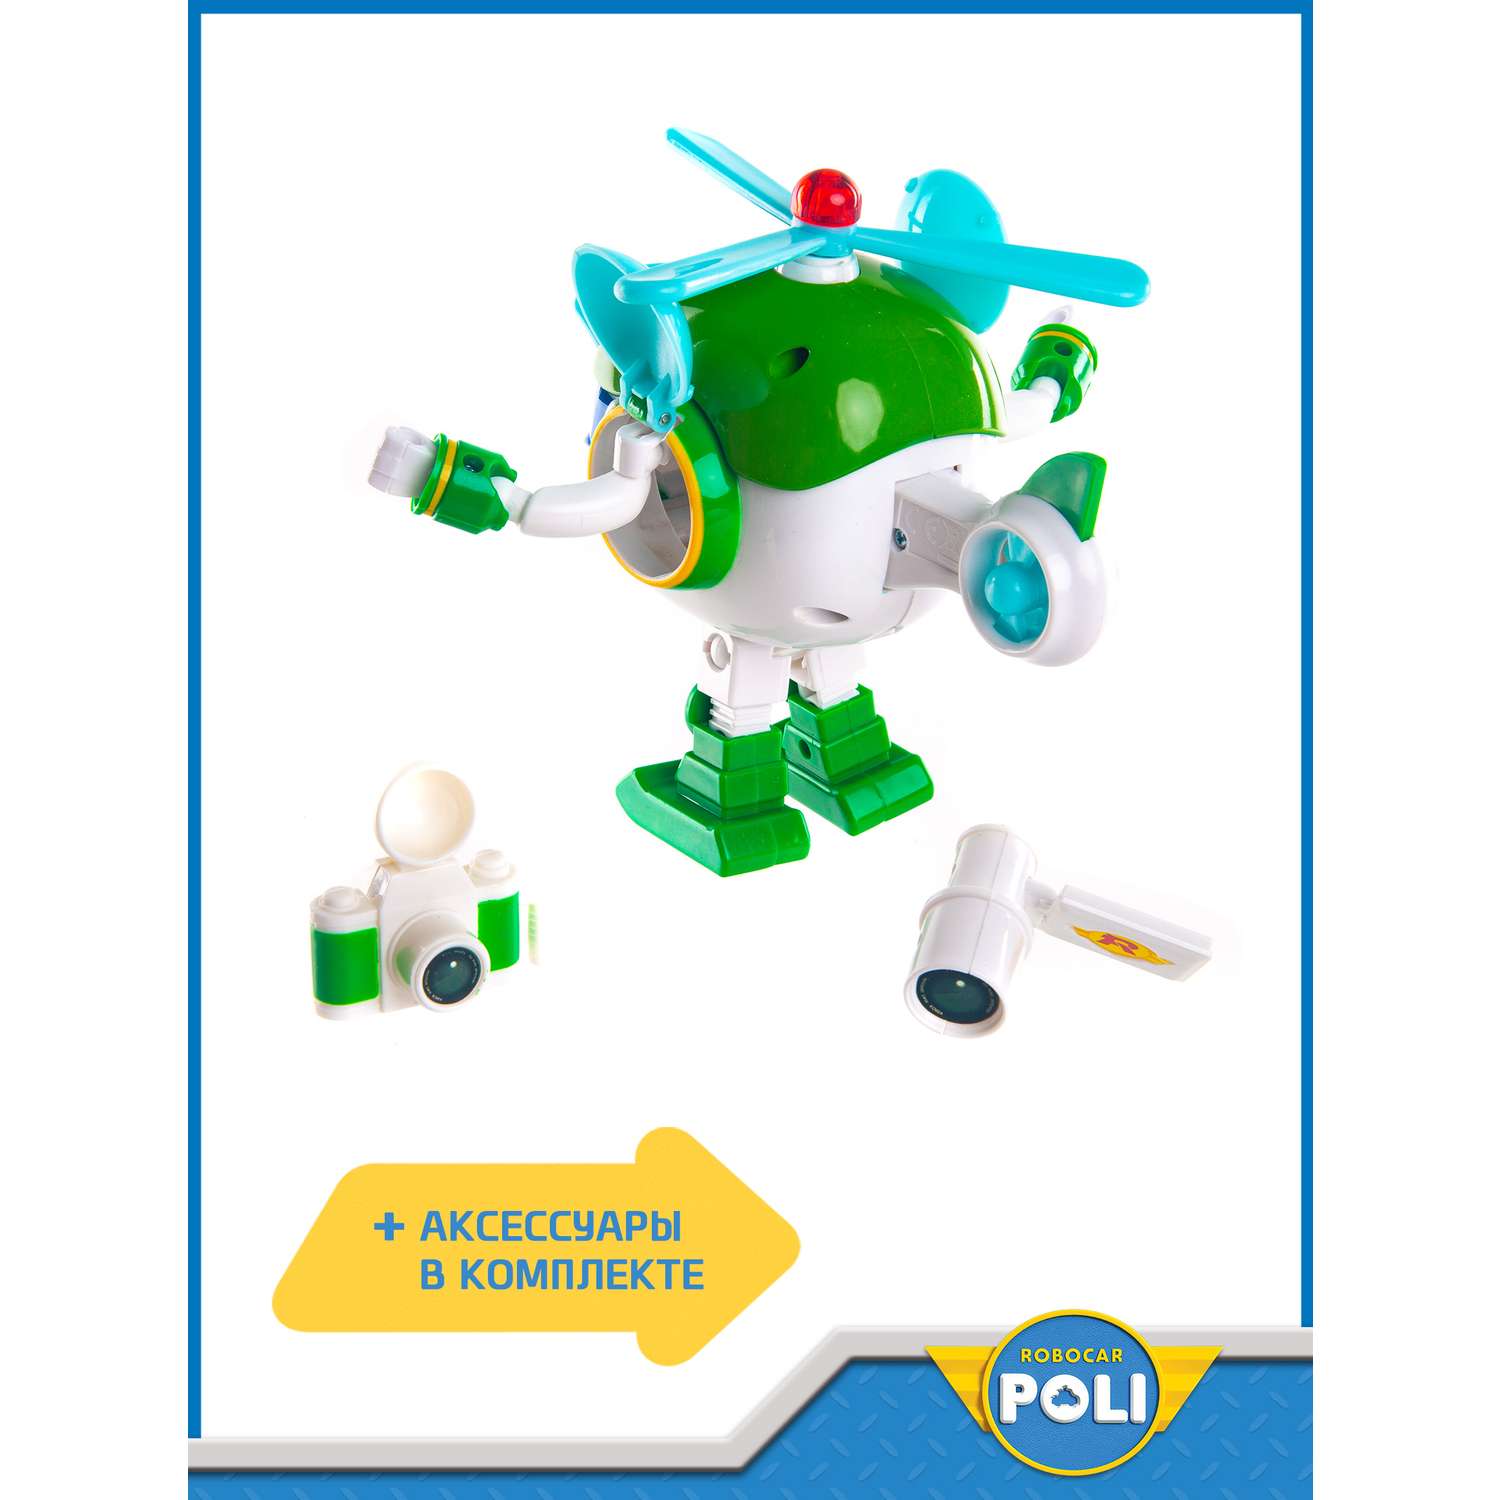 Игрушка POLI Хэли трансформер (12.5 см) свет + инструменты - фото 6